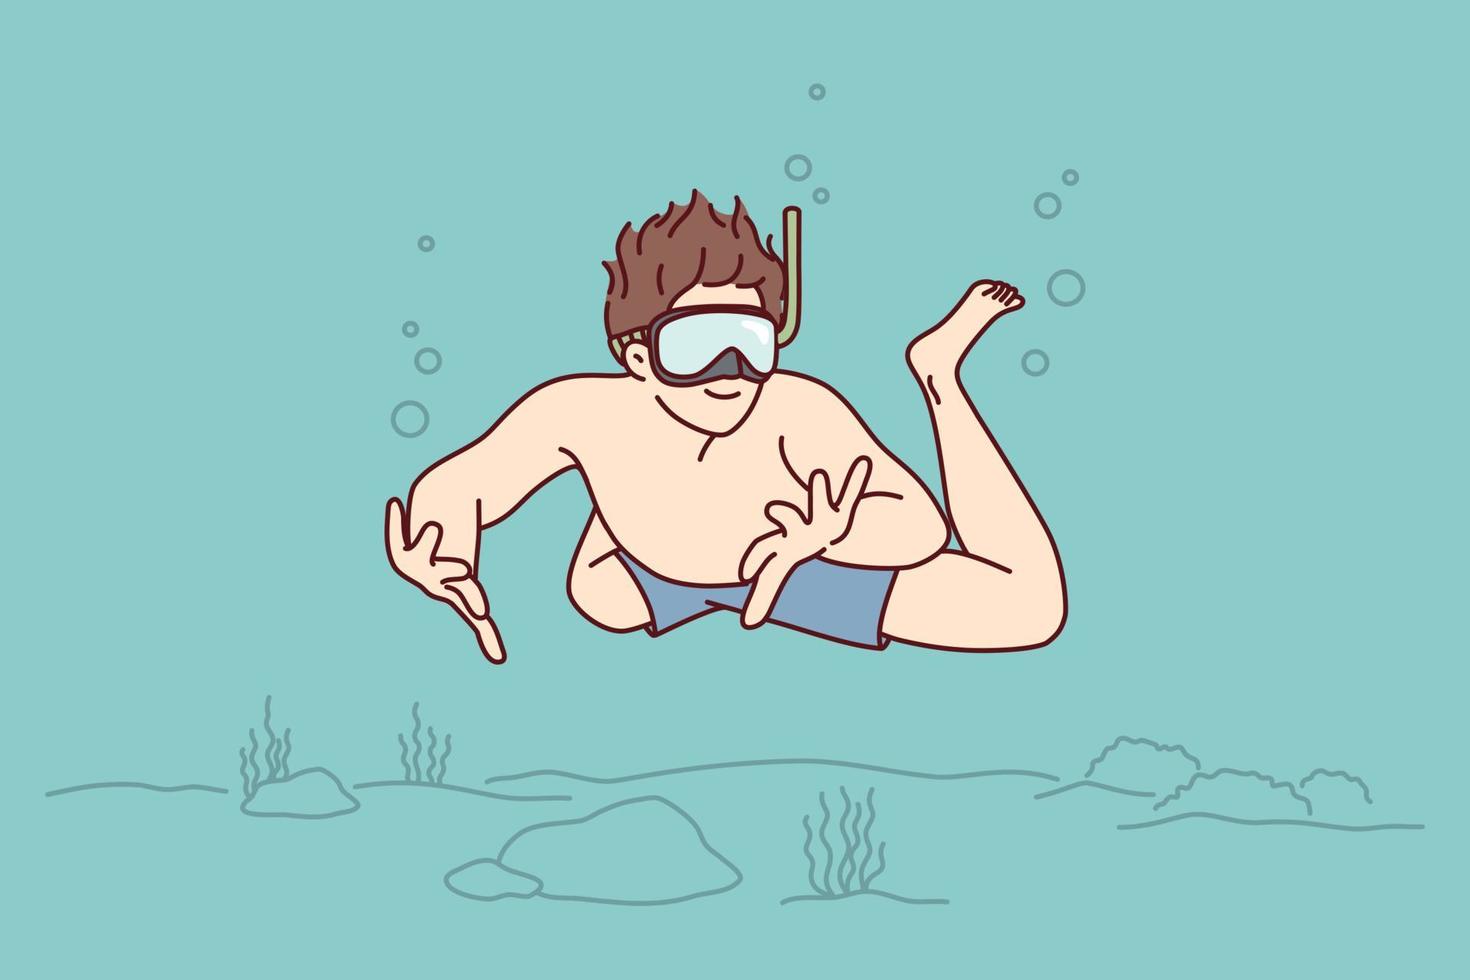 mann taucher schwimmt unter wasser genießen sie die erkundung des ozeanbodens mit felsen und algen. kerl in badehose und tauchermaske verbringt sommerferien auf meer und macht unterwassertourismus. flache vektorillustration vektor